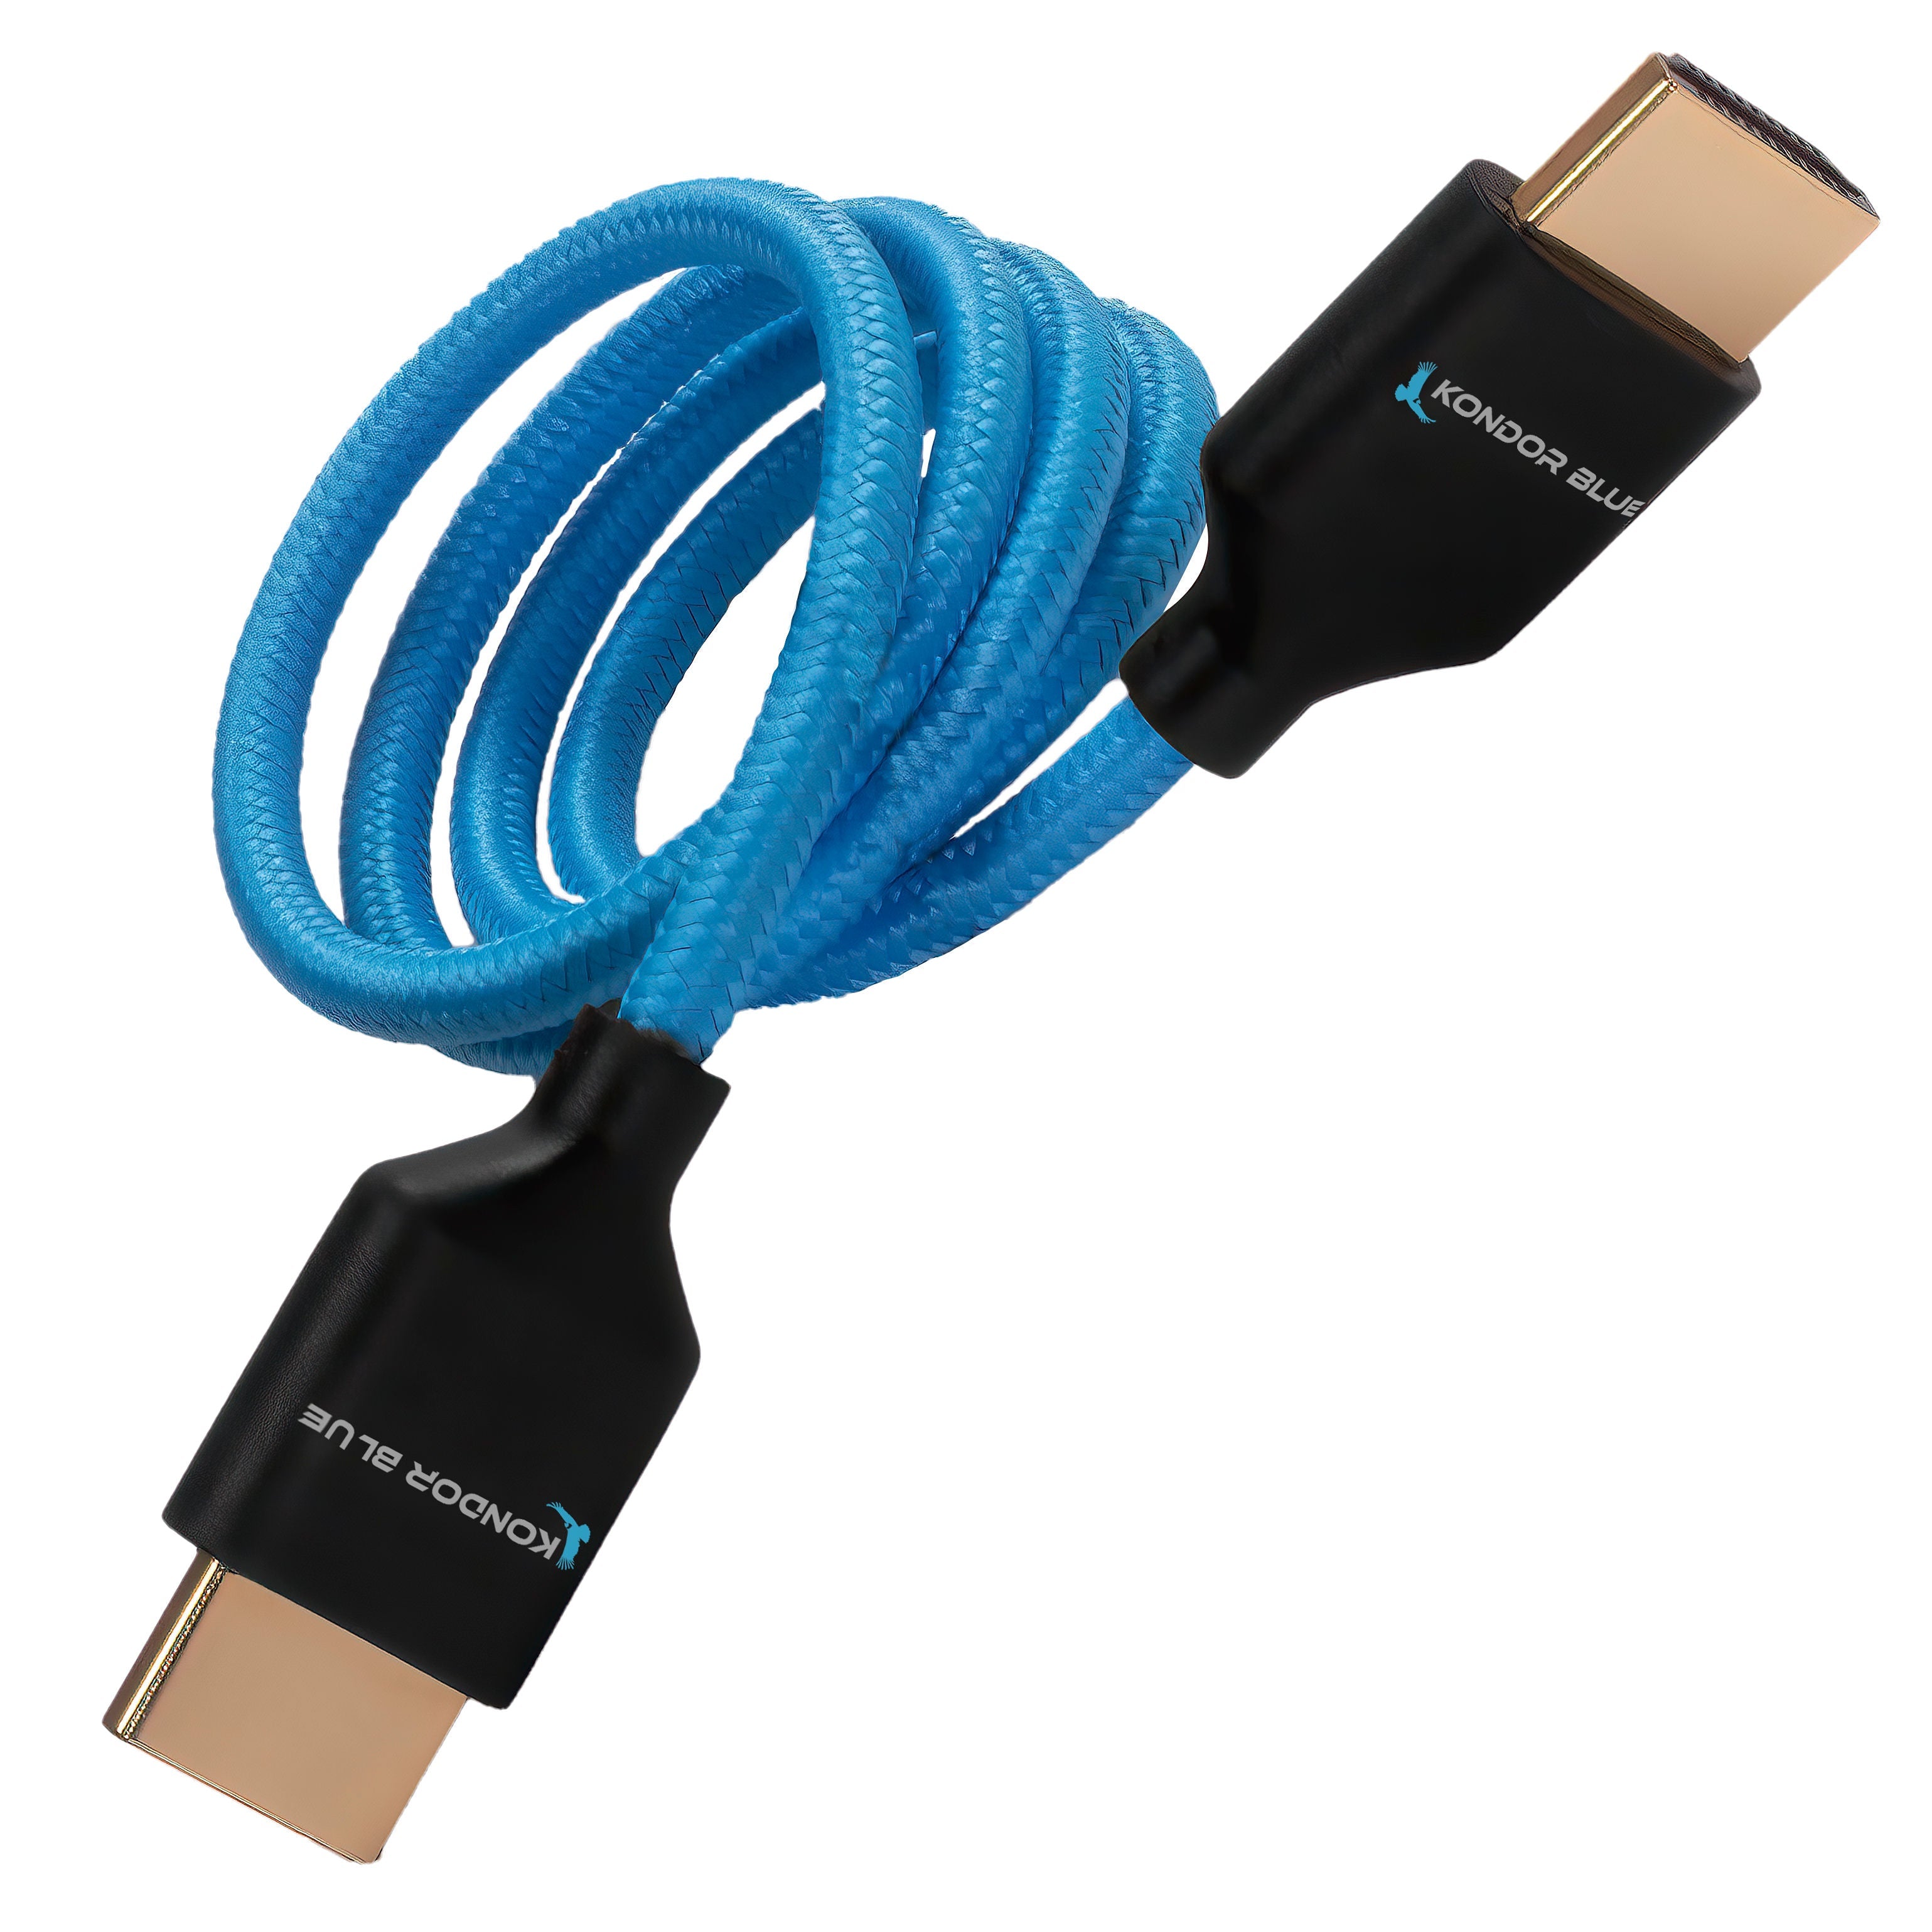 Kondor Blue Cable corto HDMI a HDMI 2.0 4K 40cm (rojo)